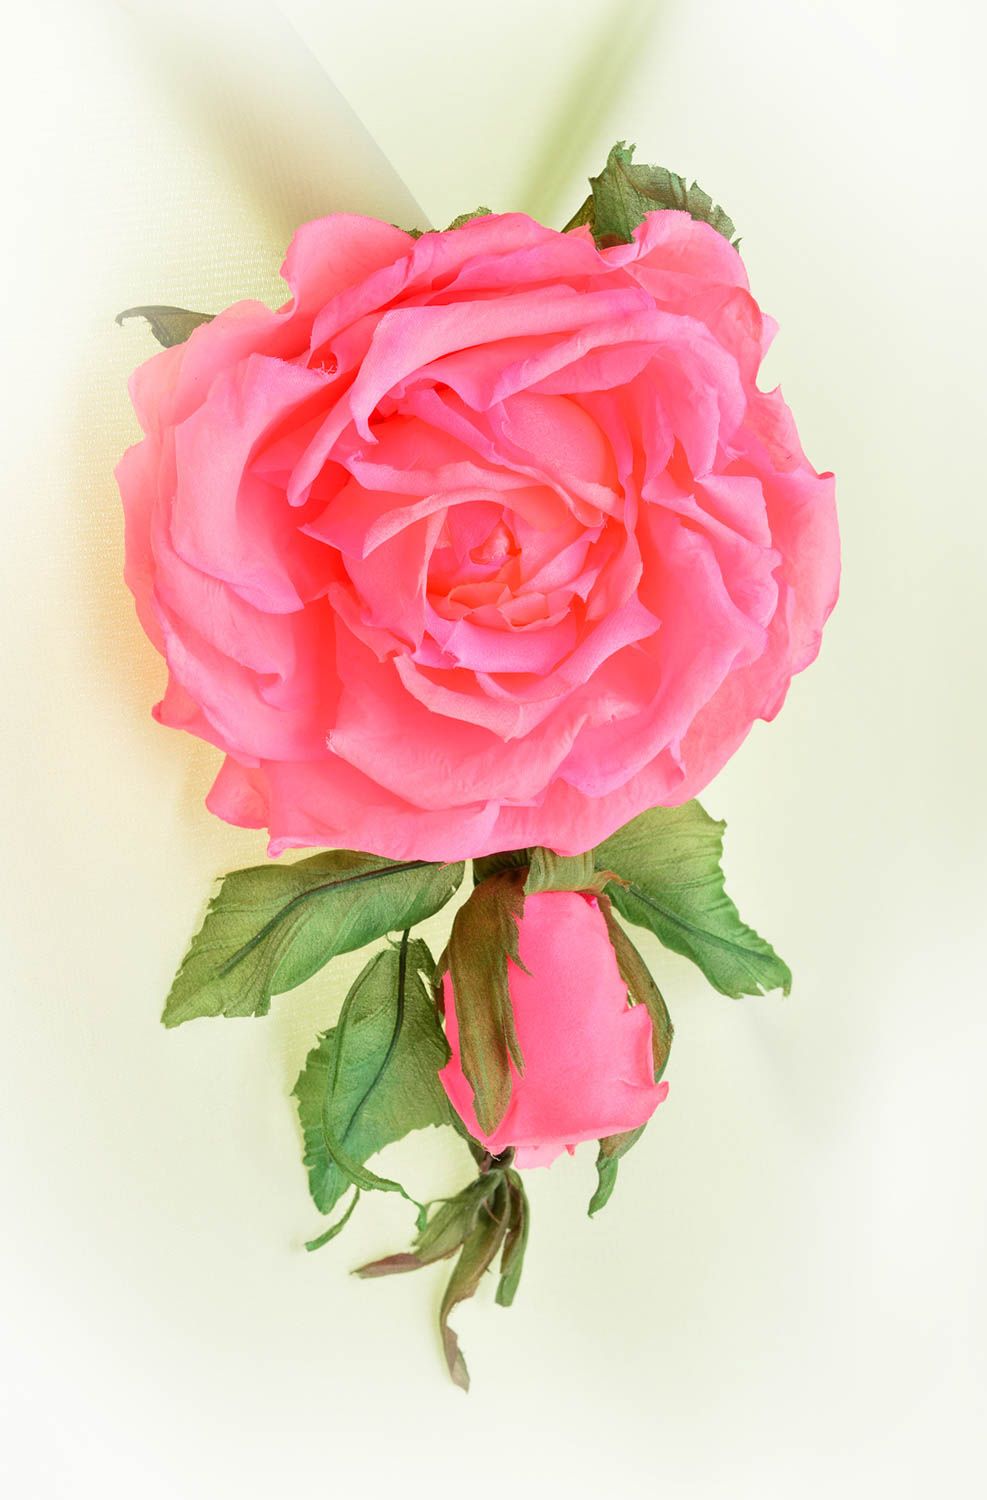 Брошь из шелка хэнд мэйд брошь-заколка розовая роза авторская бижутерия фото 1